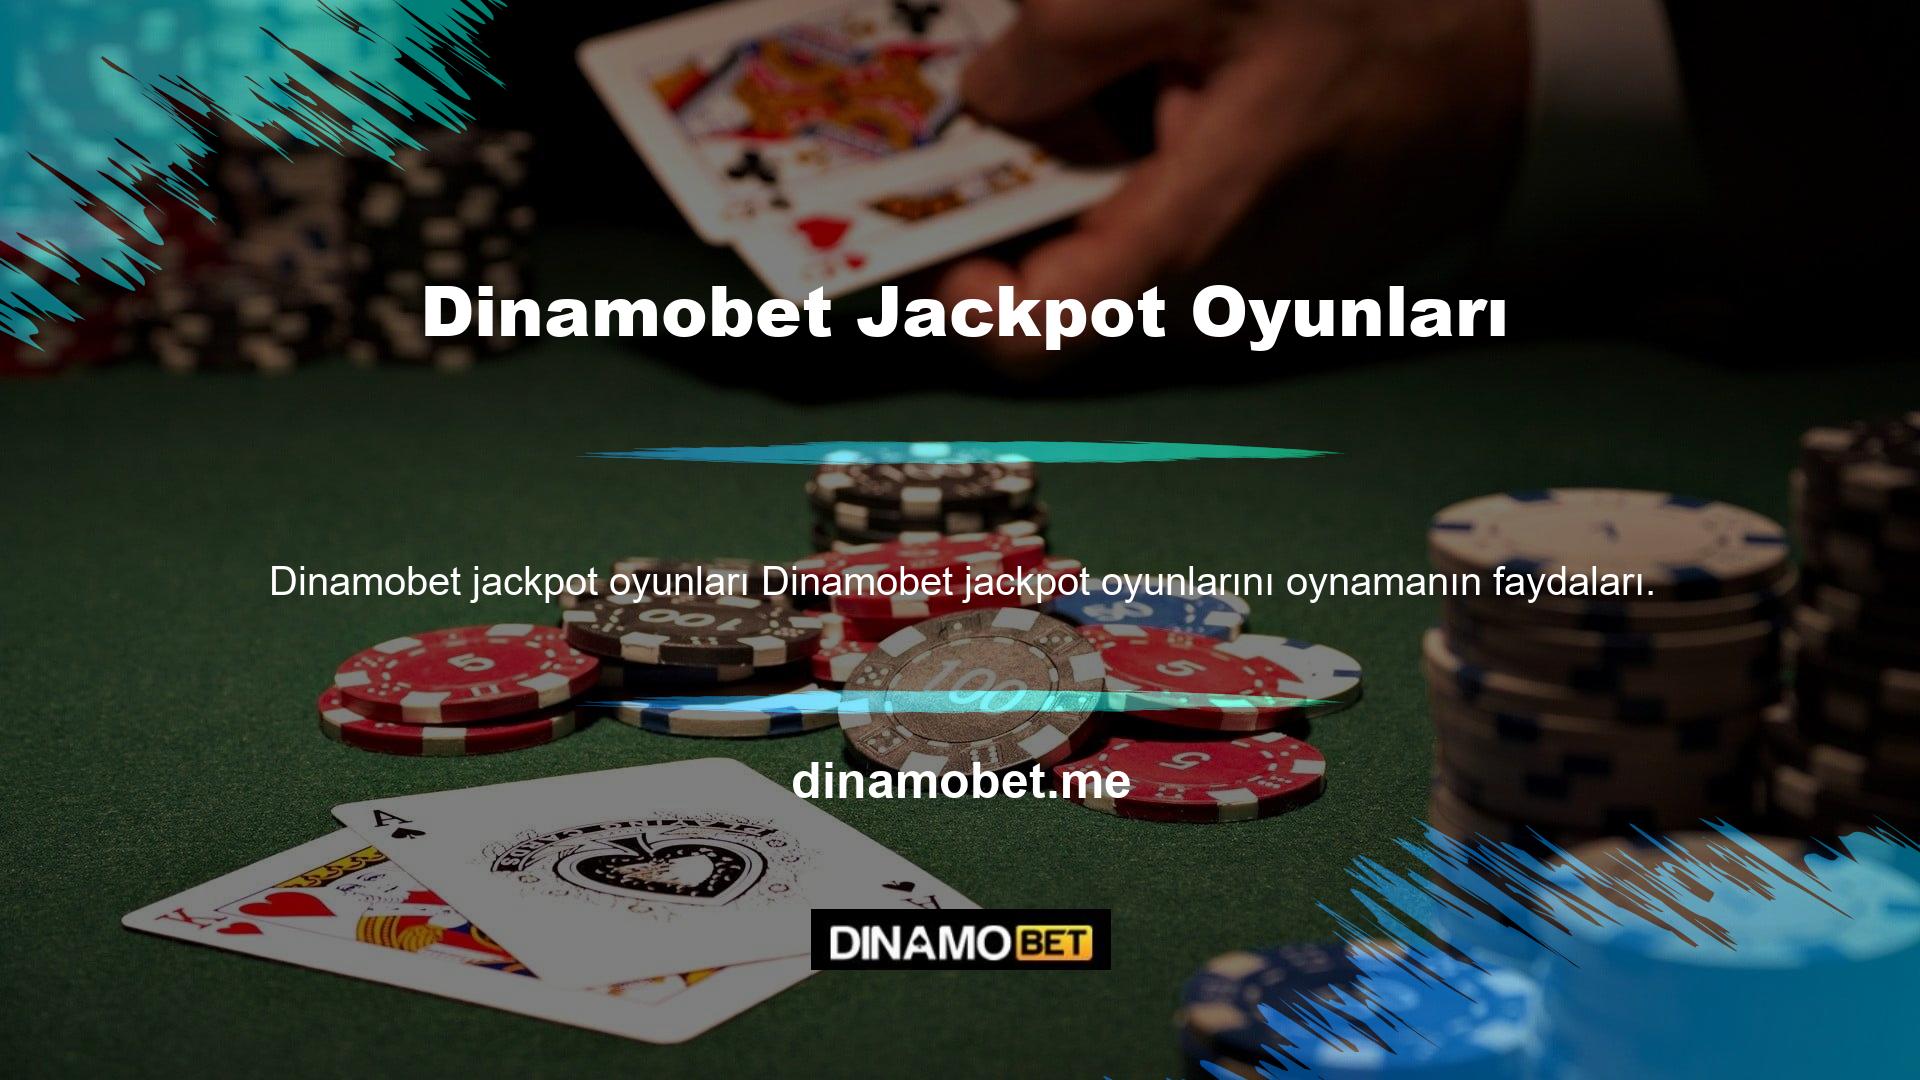 Jackpot oyunları hakkında daha fazla bilgi için lütfen Dinamobet web sitesini ziyaret edin